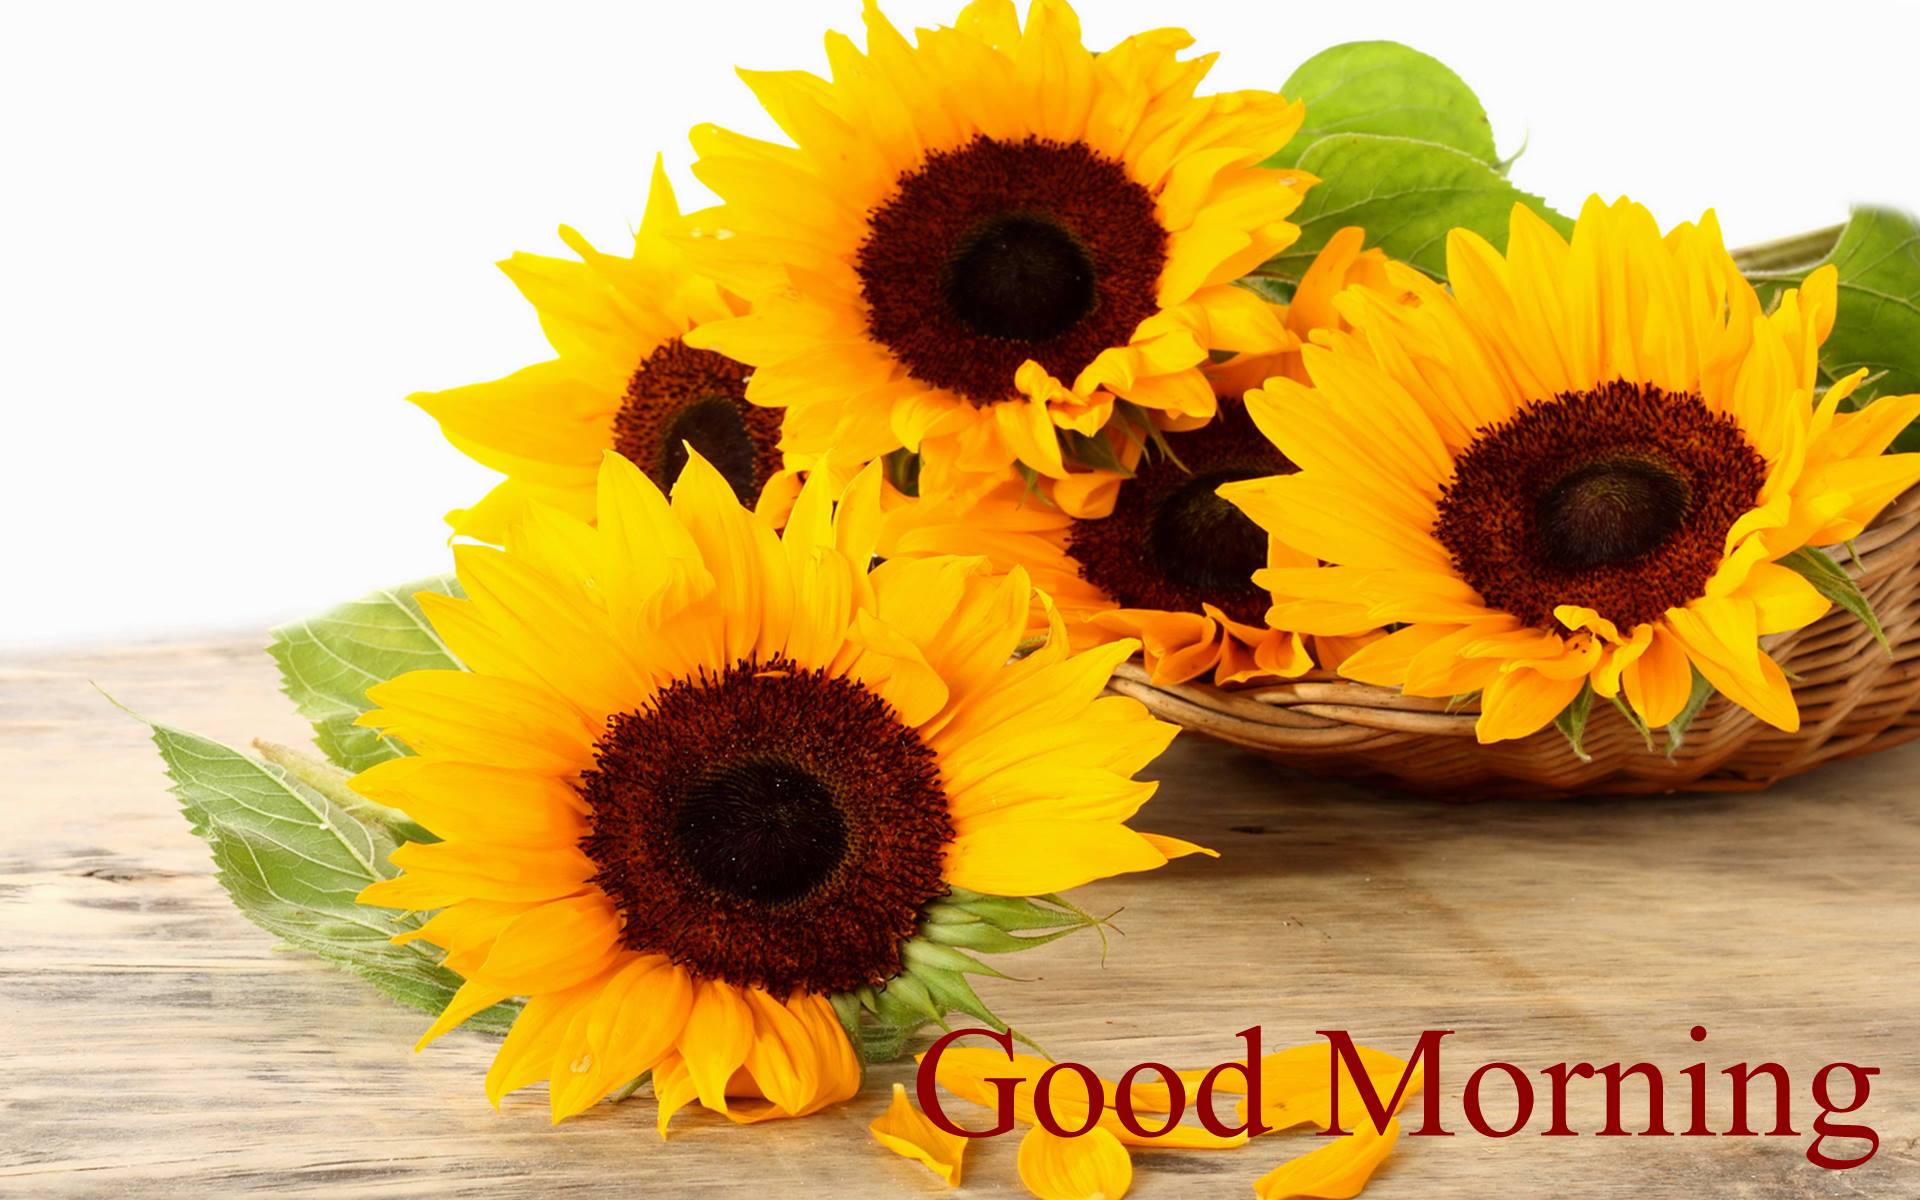 Good Morning Sunflower Images Full HD